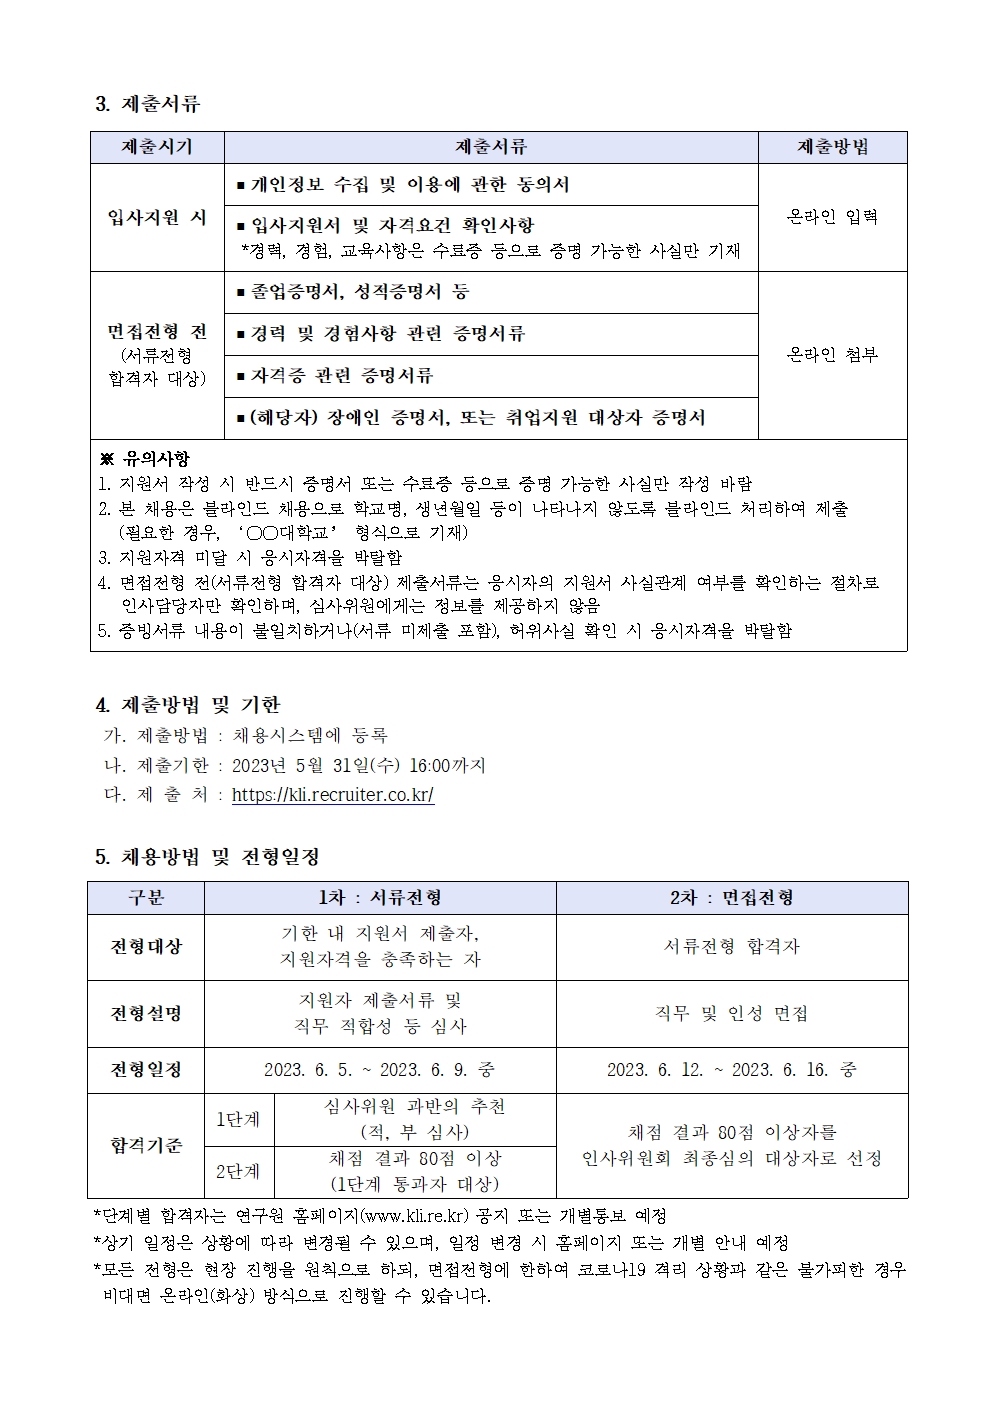 (2/3) 한국노동연구원 기간제 행정원 채용 공고 - 자세한 내용은 하단 참조